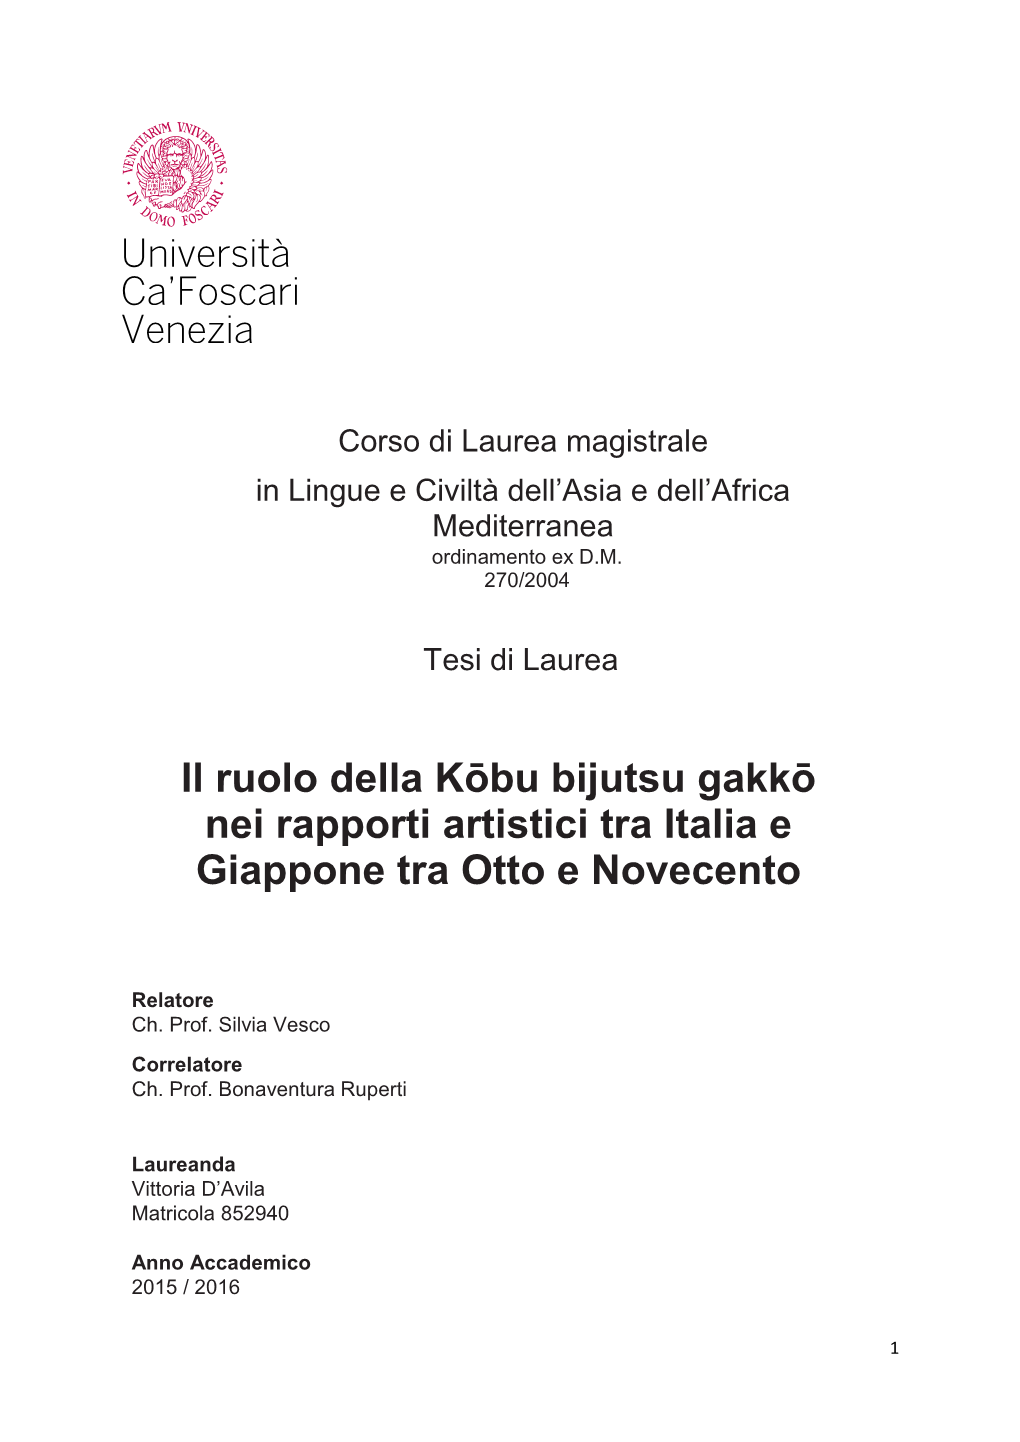 Il Ruolo Della Kōbu Bijutsu Gakkō Nei Rapporti Artistici Tra Italia E Giappone Tra Otto E Novecento